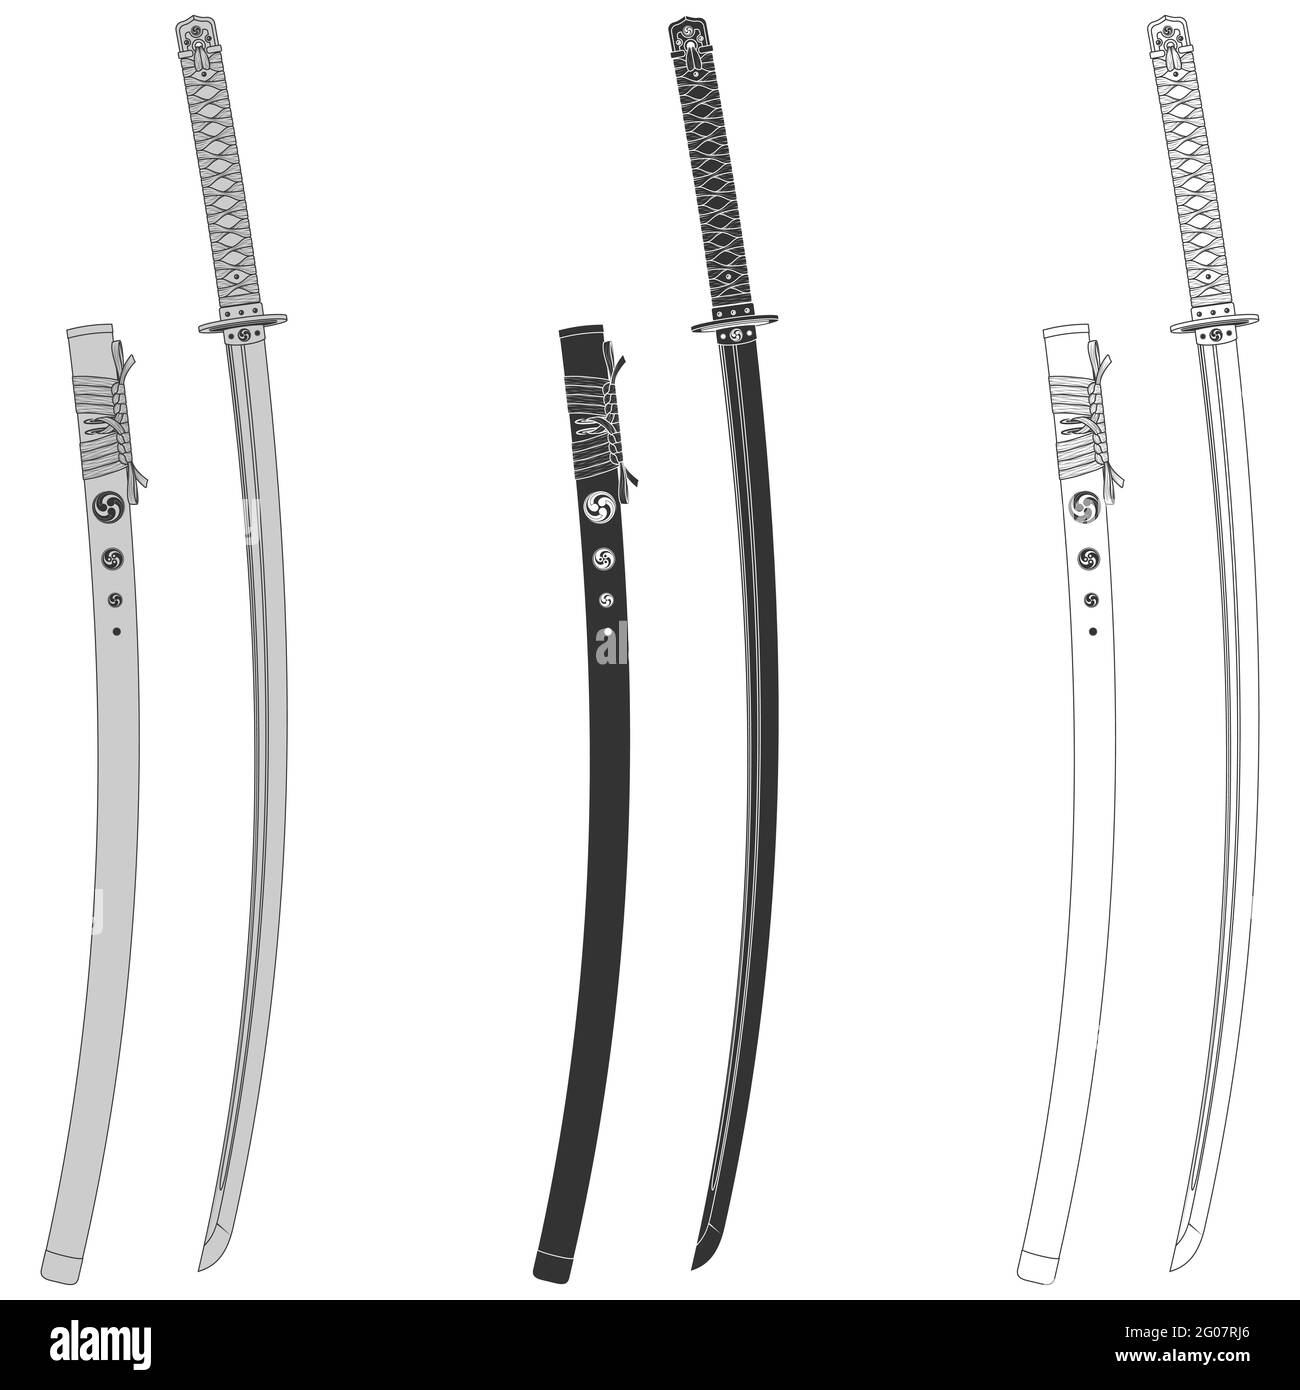 Vektor-Design eines Katana Samurai Schwerter, Katana Schwert aus dem alten feudalen japan, von Samurai Krieger verwendet Stock Vektor